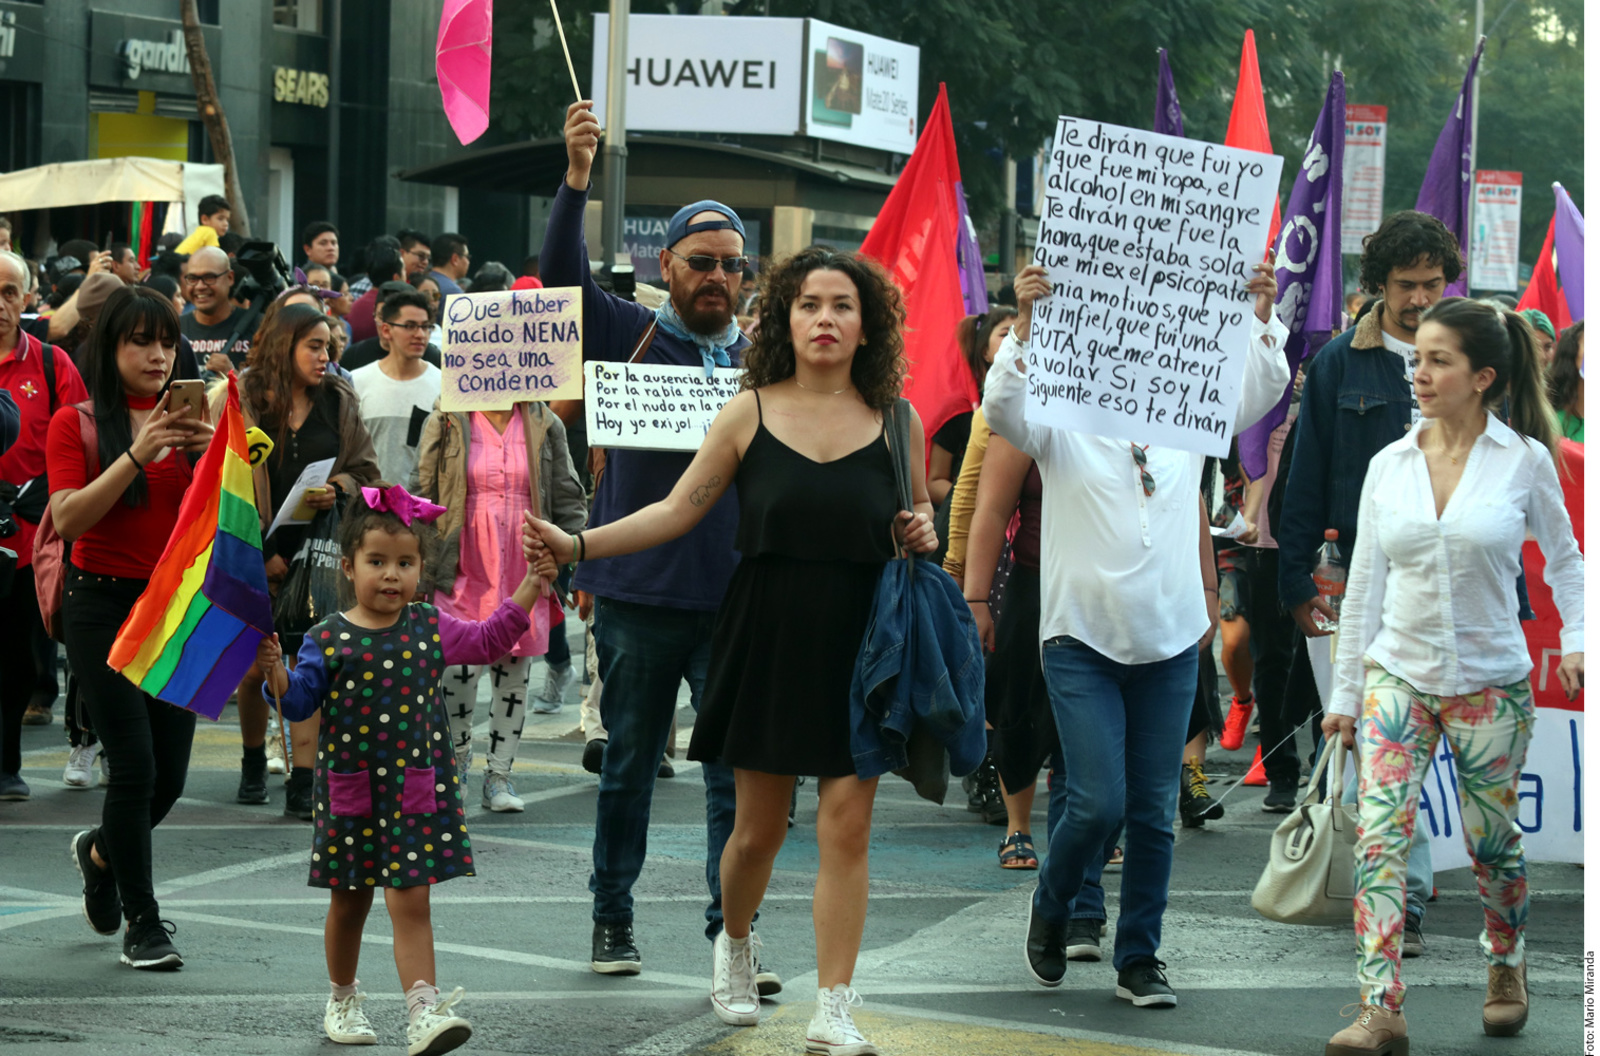 No se dejan. Cientos de mujeres protestaron en las calles del centro de la Ciudad de México, exigiendo respeto a sus derechos humanos.